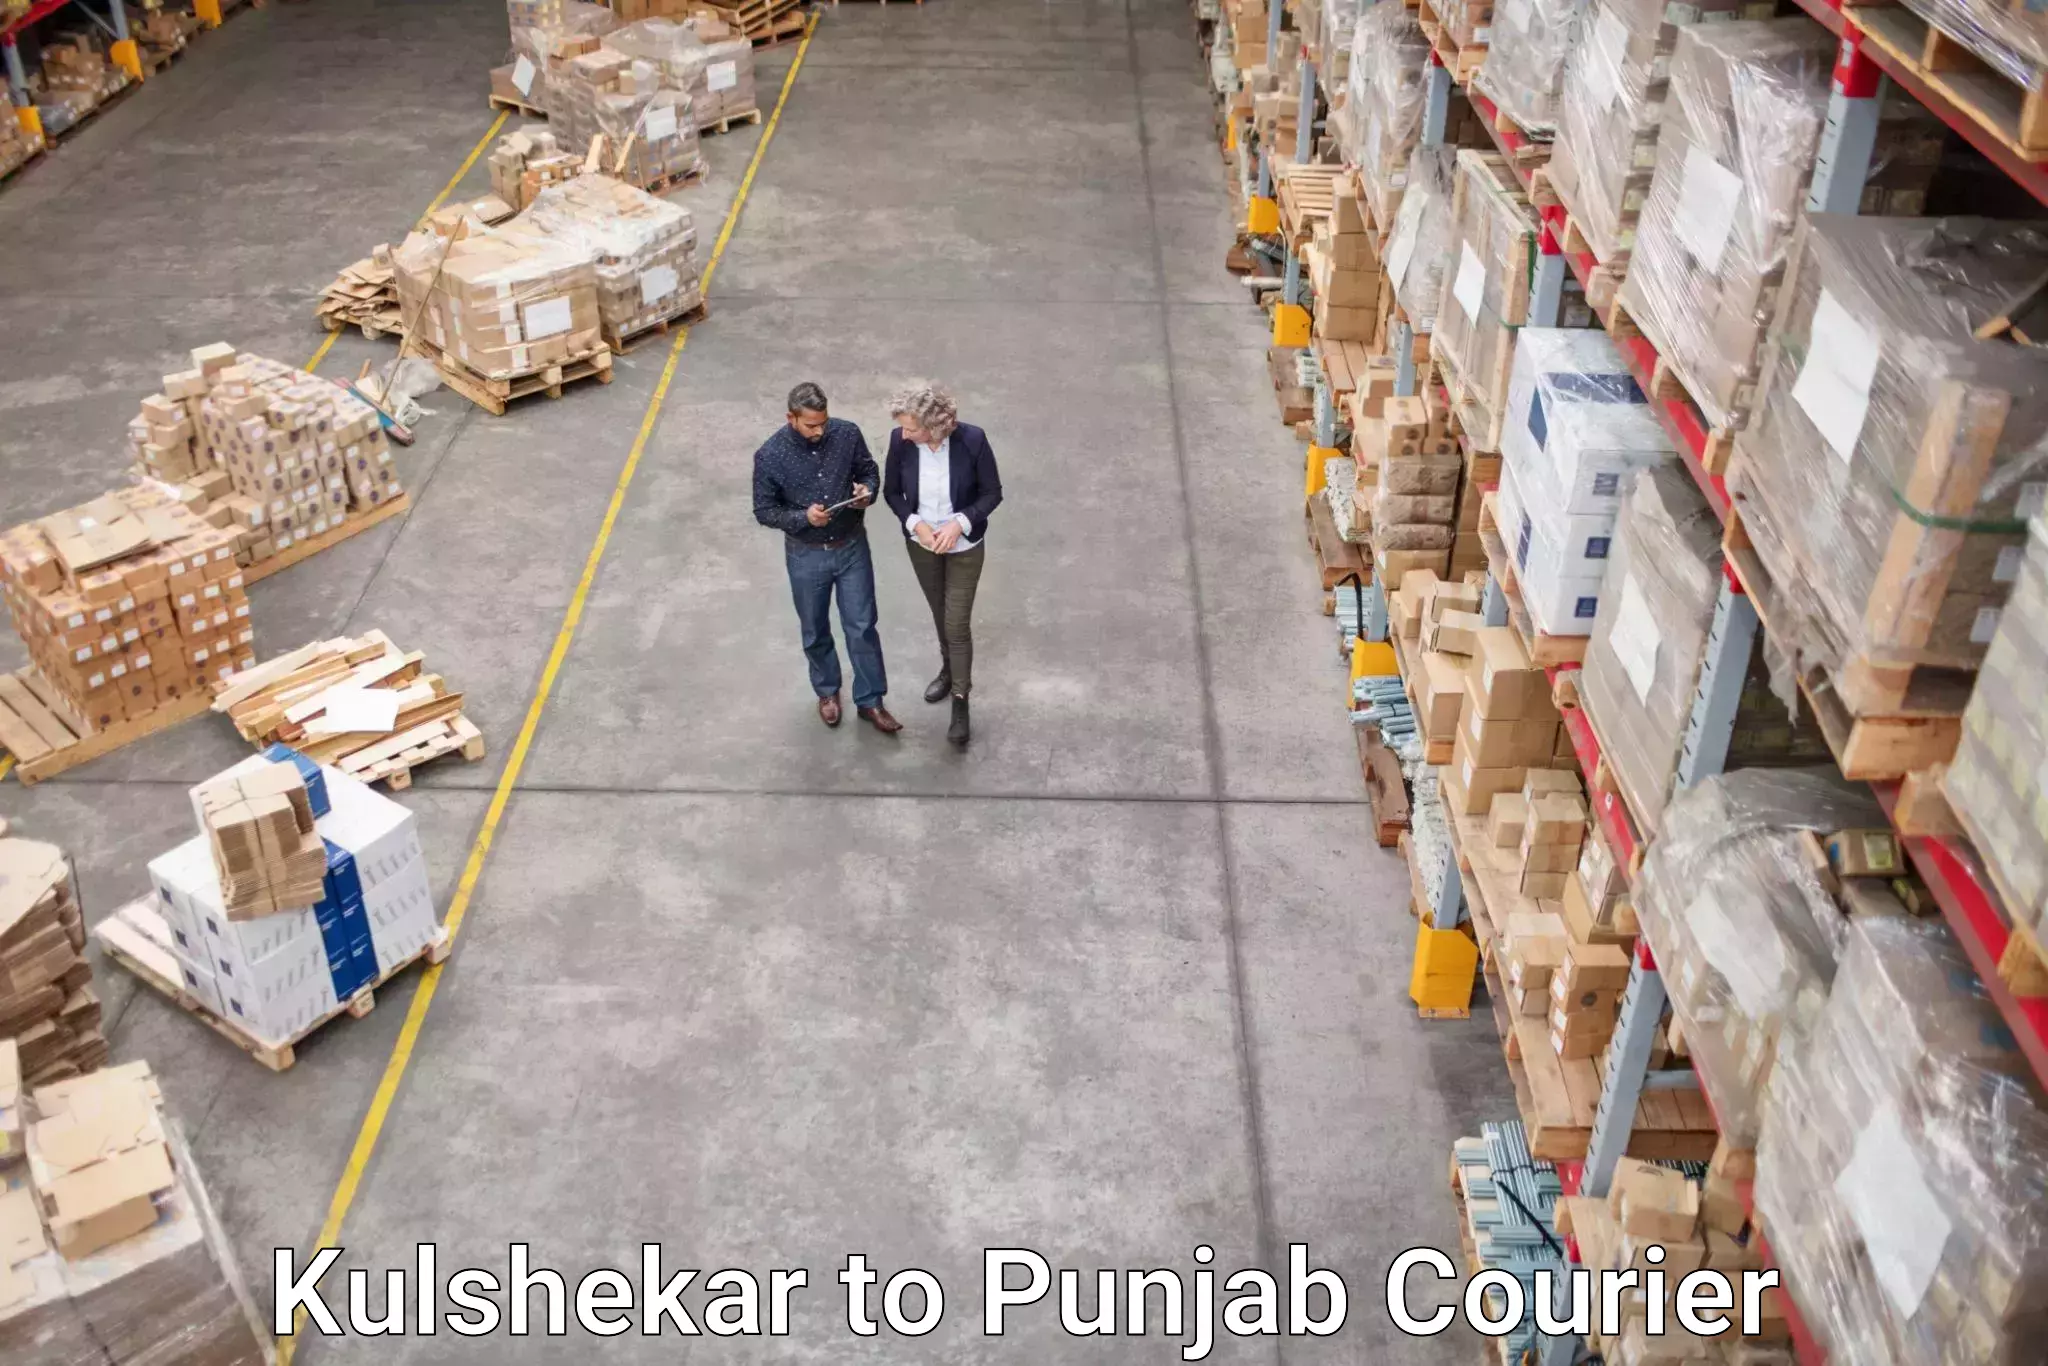 Full-service courier options Kulshekar to Dharamkot